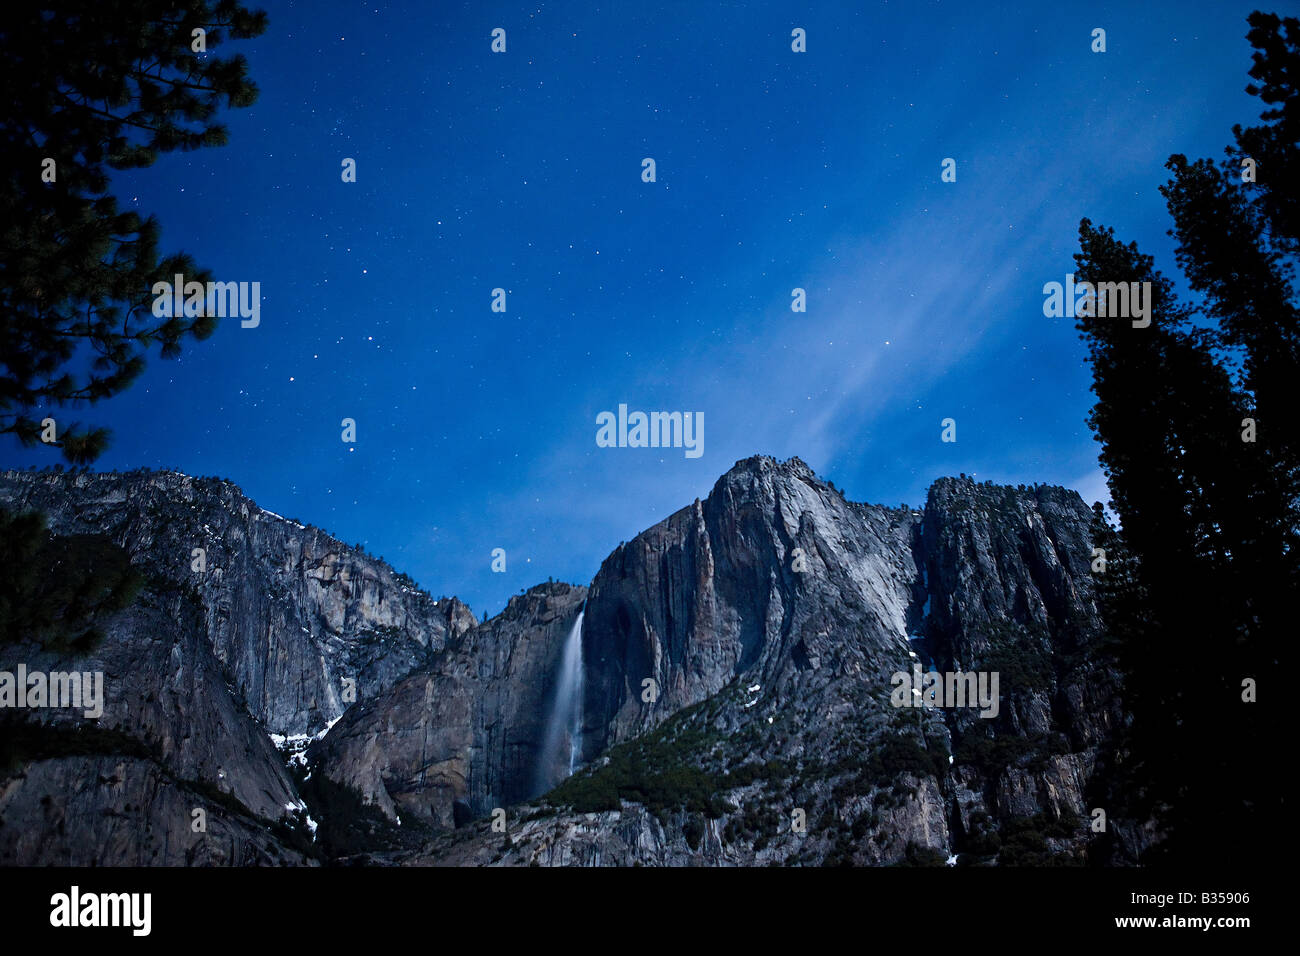 Ysoemite Falls nimmt einen anderen weltlichen Blick auf nahe unter den Sternen Yosemite Nationalpark, Kalifornien USA Stockfoto